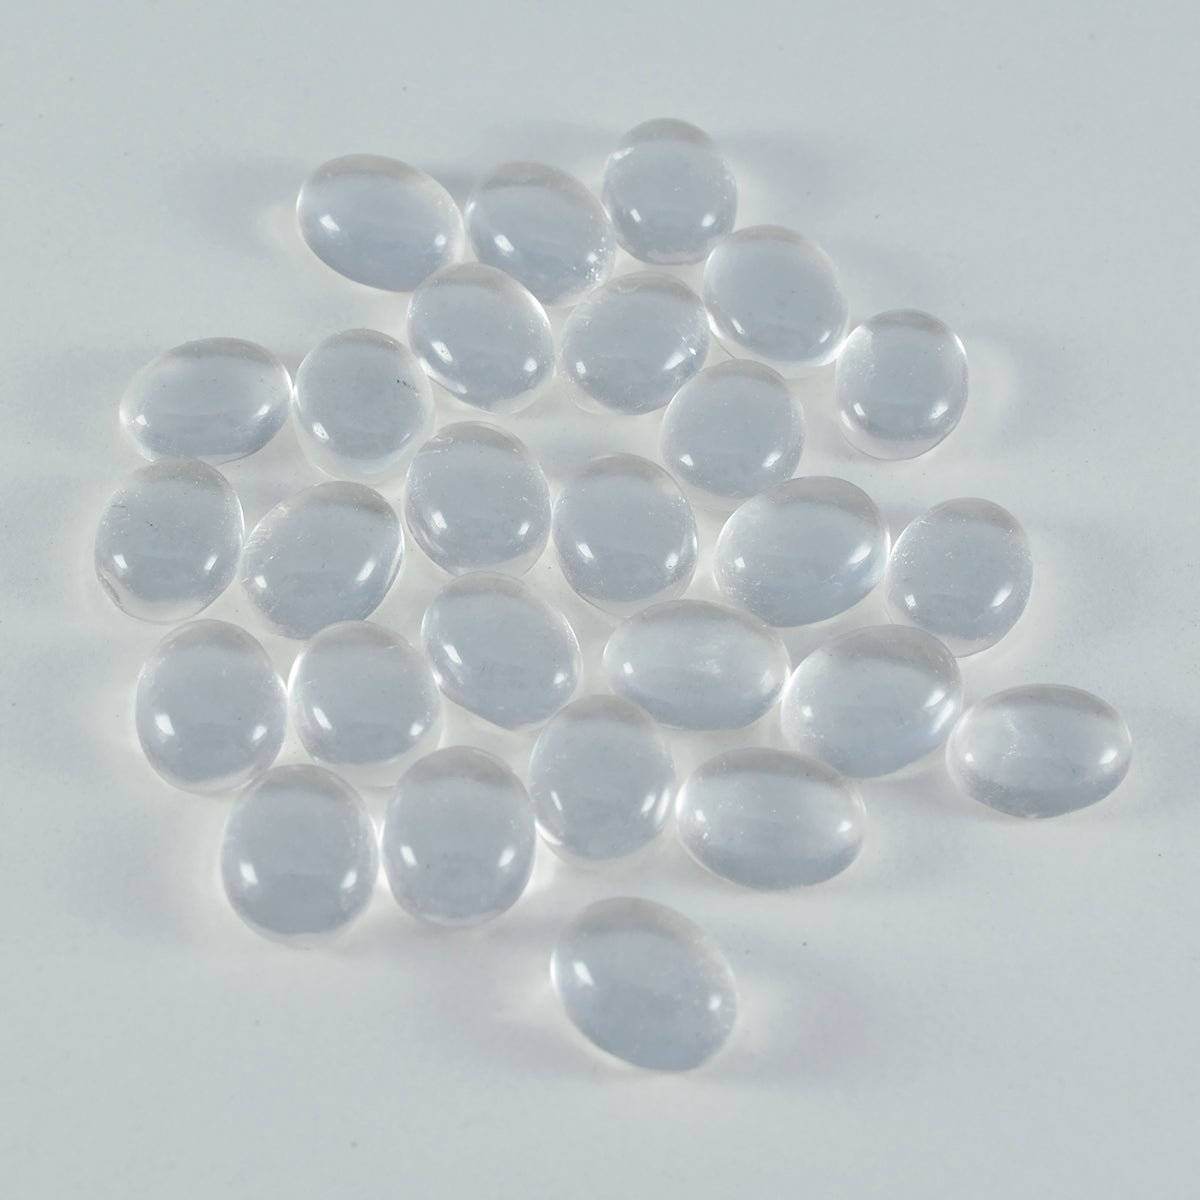 Riyogems – cabochon de quartz en cristal blanc, forme ovale, belle qualité, 7x9mm, 1 pièce